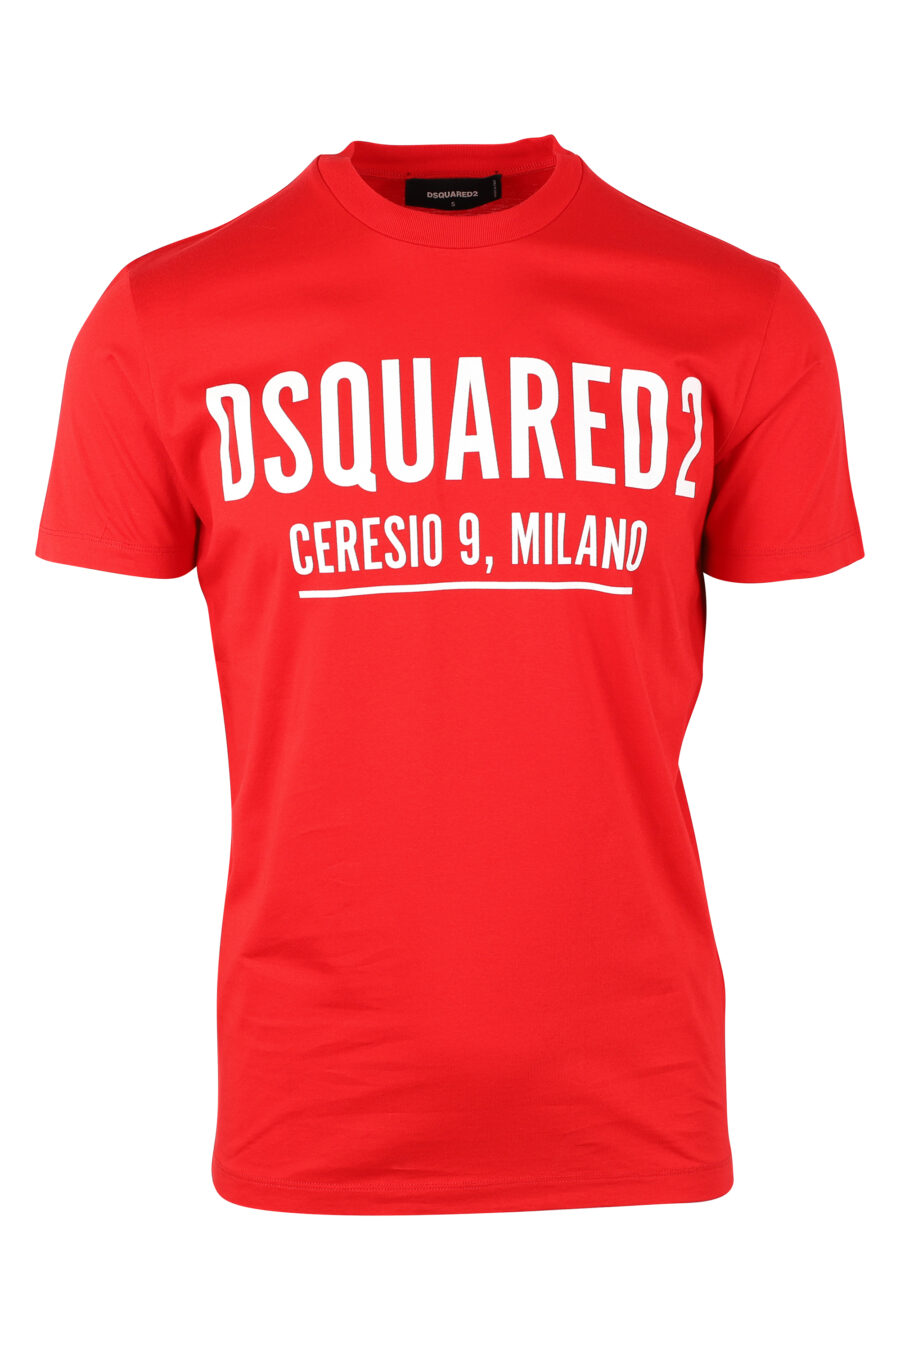 T-shirt vermelha com o maxilogo "ceresio 9" - IMG 9750